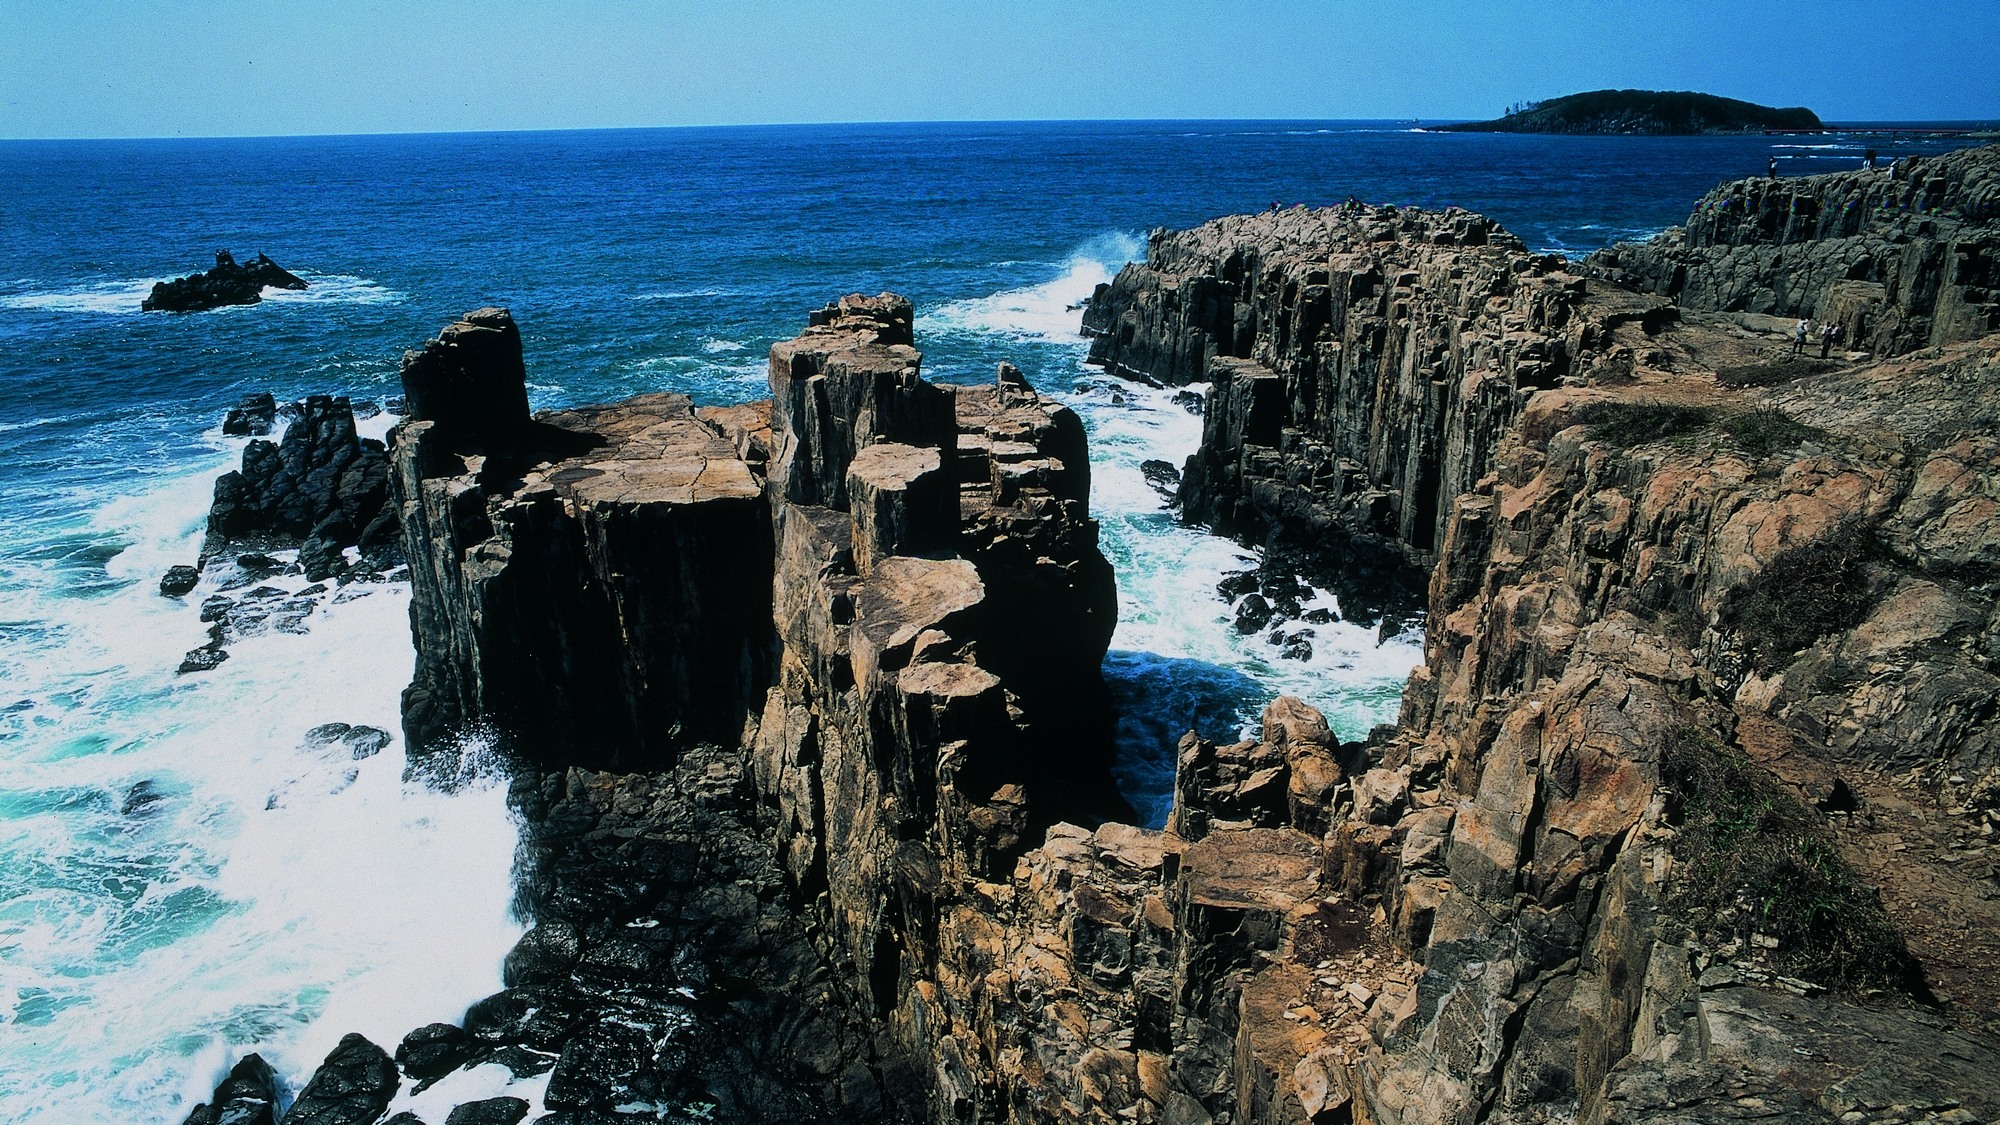 越前海岸は車で約１時間。隆起海岸による男らしい雄々しい奇岩断崖が特徴です。